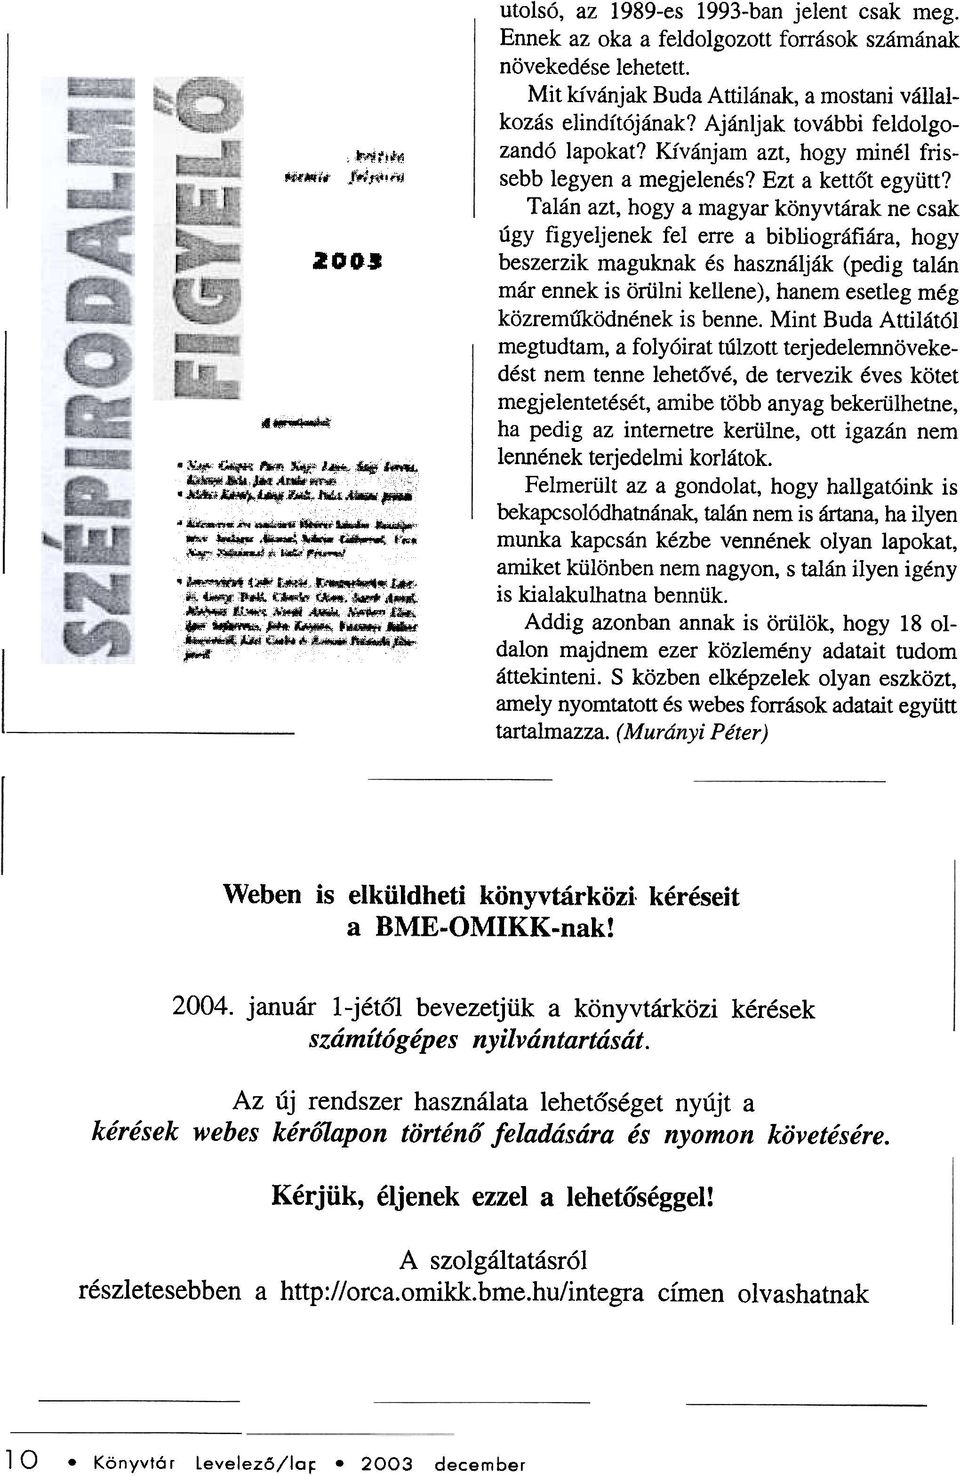 Talán azt, hogy a magyar könyvtárak ne csak úgy figyeljenek fel elte a bibliográfiára, hogy beszerzik maguknak és használják (pedig talán már ennek is örülni kellene), hanem esetleg még